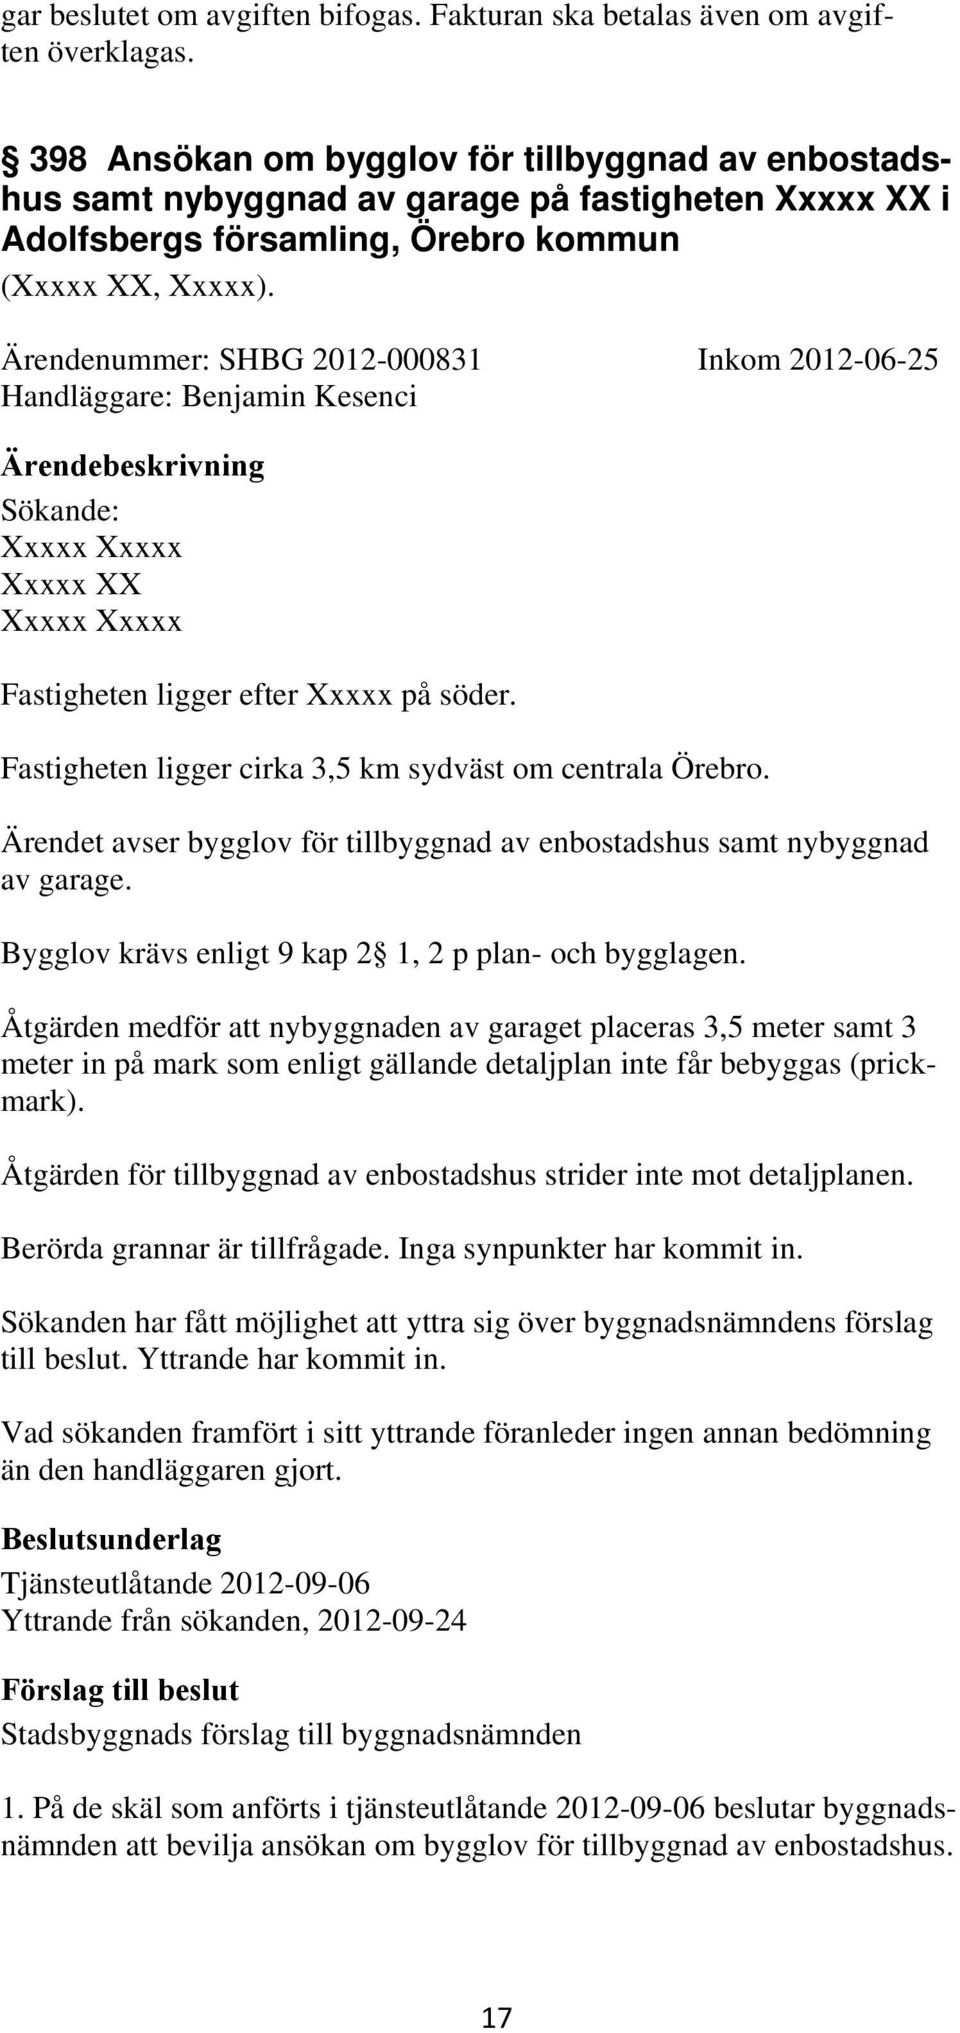 Ärendenummer: SHBG 2012-000831 Inkom 2012-06-25 Handläggare: Benjamin Kesenci Sökande: Xxxxx Xxxxx Xxxxx XX Xxxxx Xxxxx Fastigheten ligger efter Xxxxx på söder.